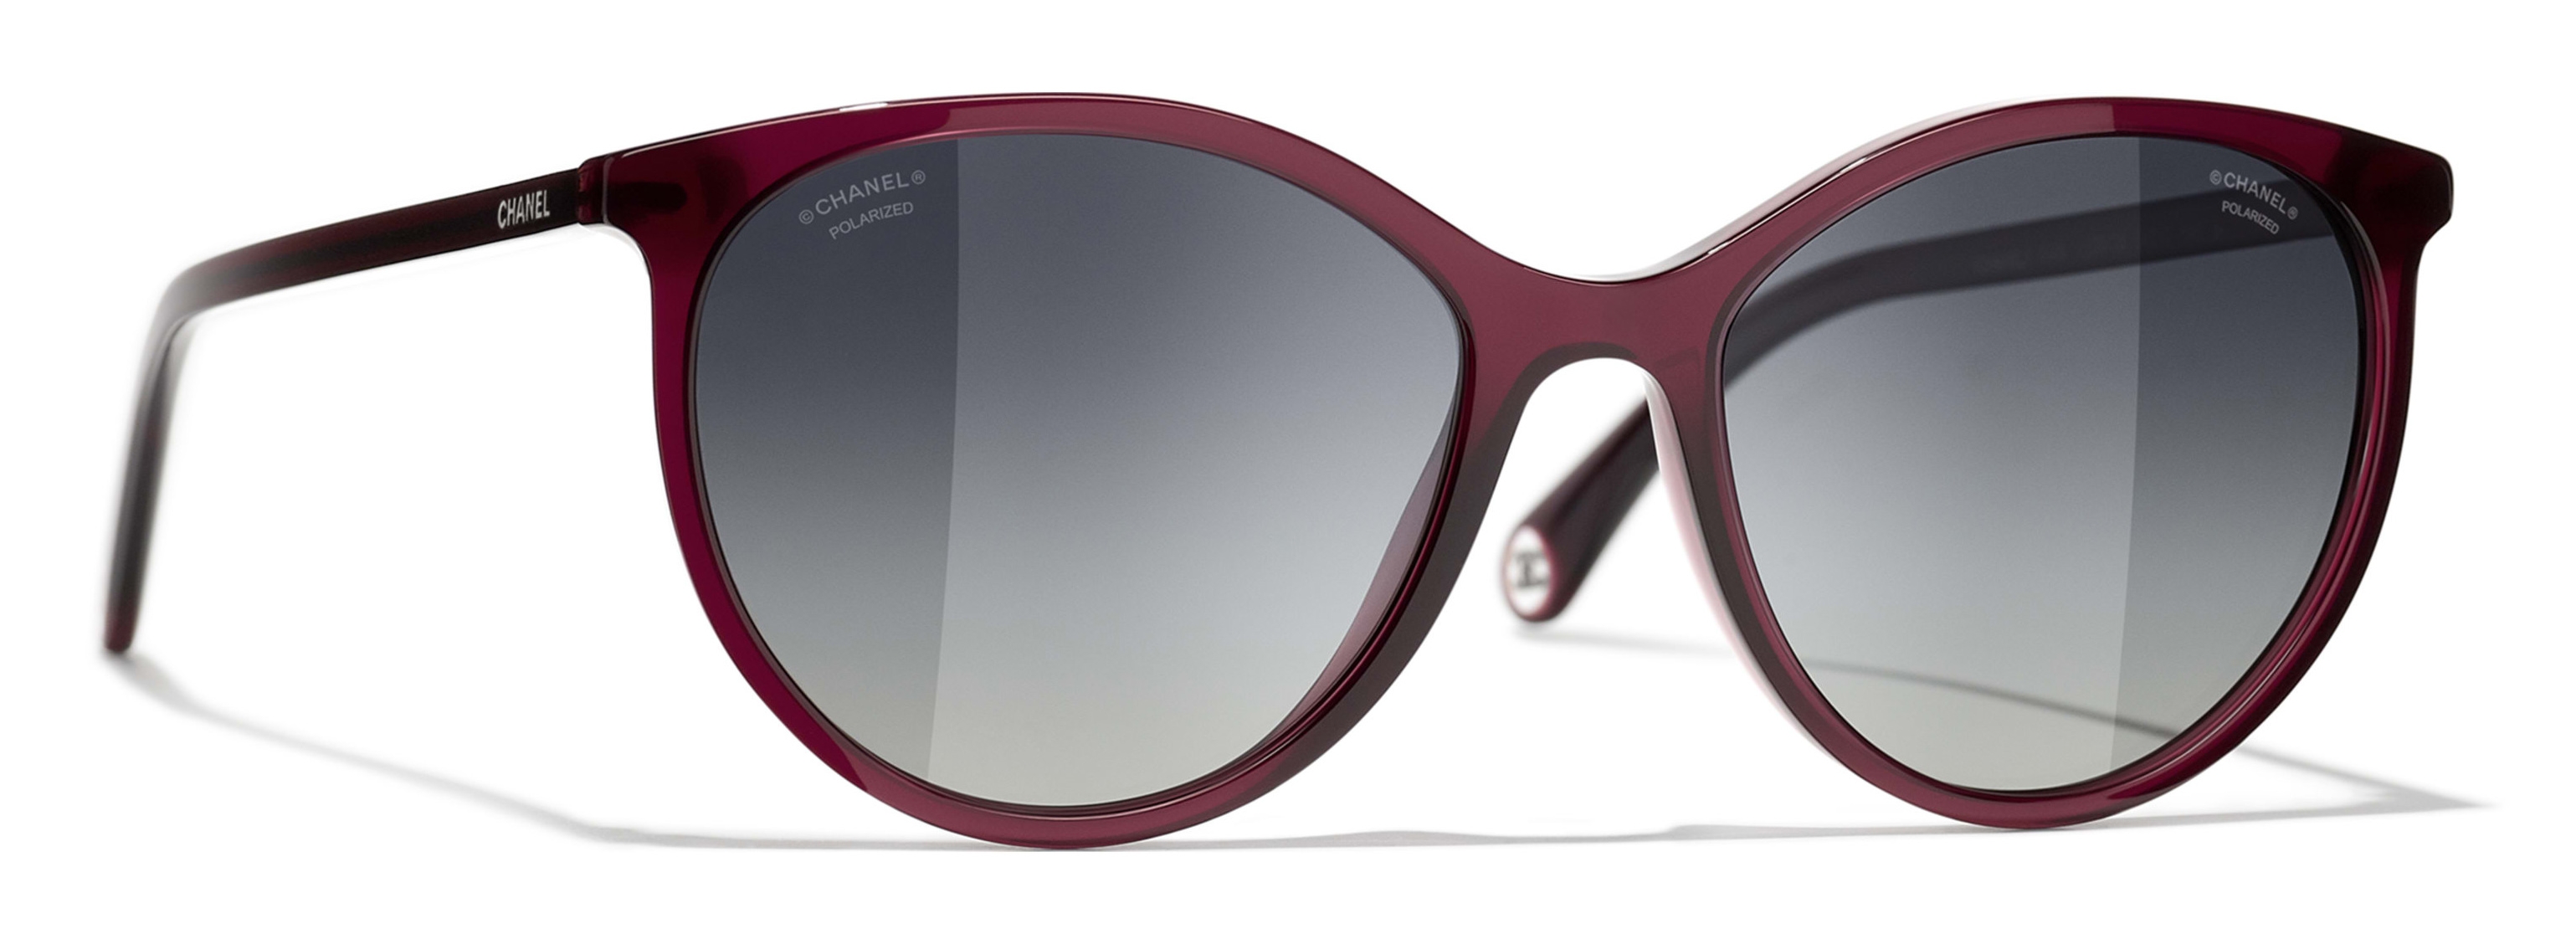 Chanel - Butterfly Sunglasses - Dark Red - Chanel Eyewear - Avvenice